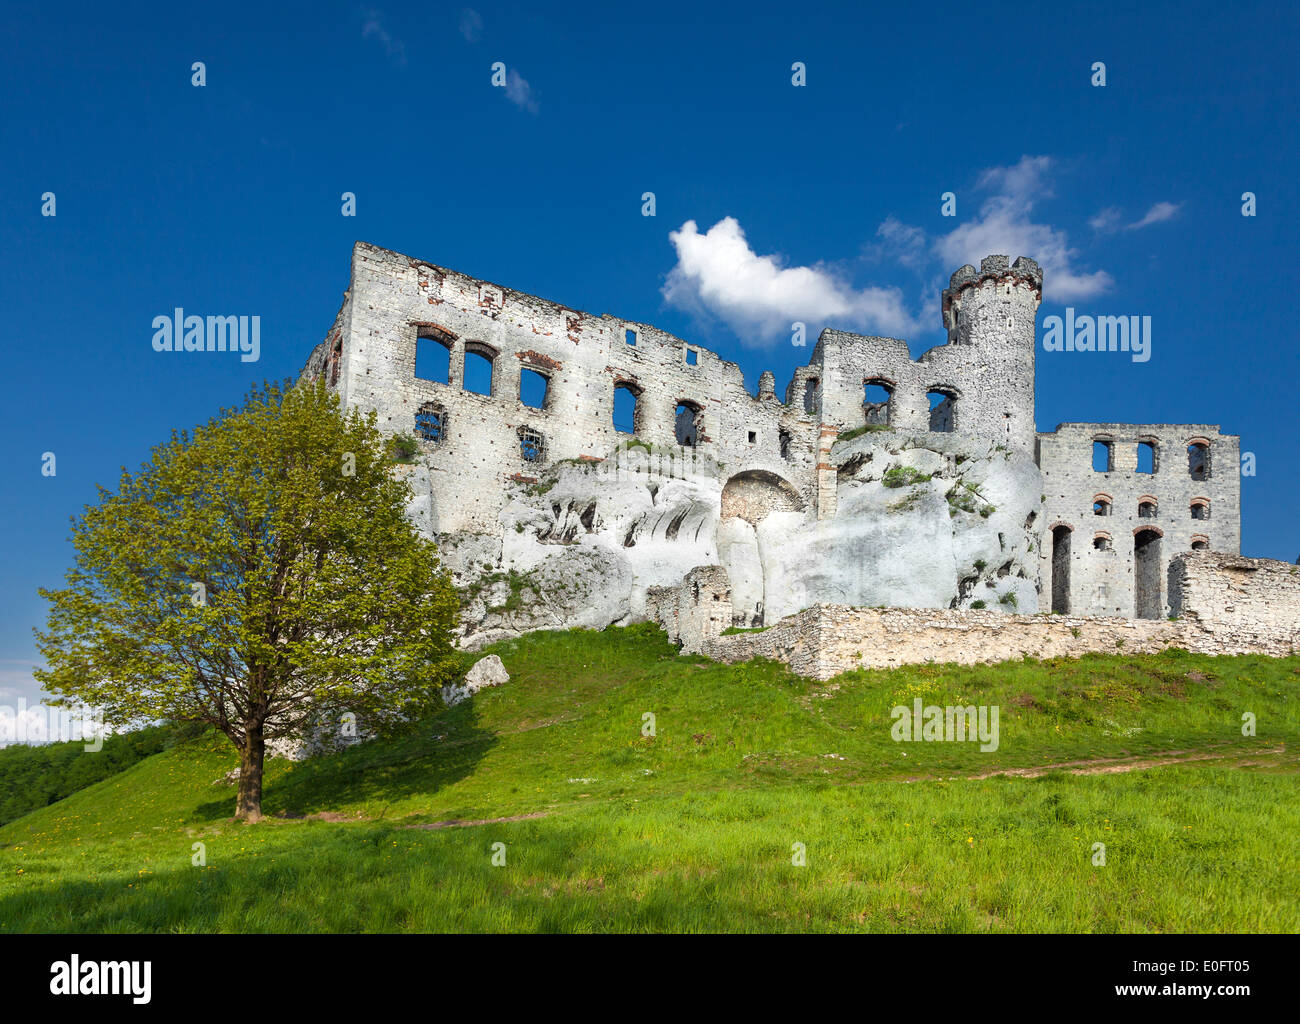 Ruines d'un château, fortifications Ogrodzieniec, Pologne. Banque D'Images